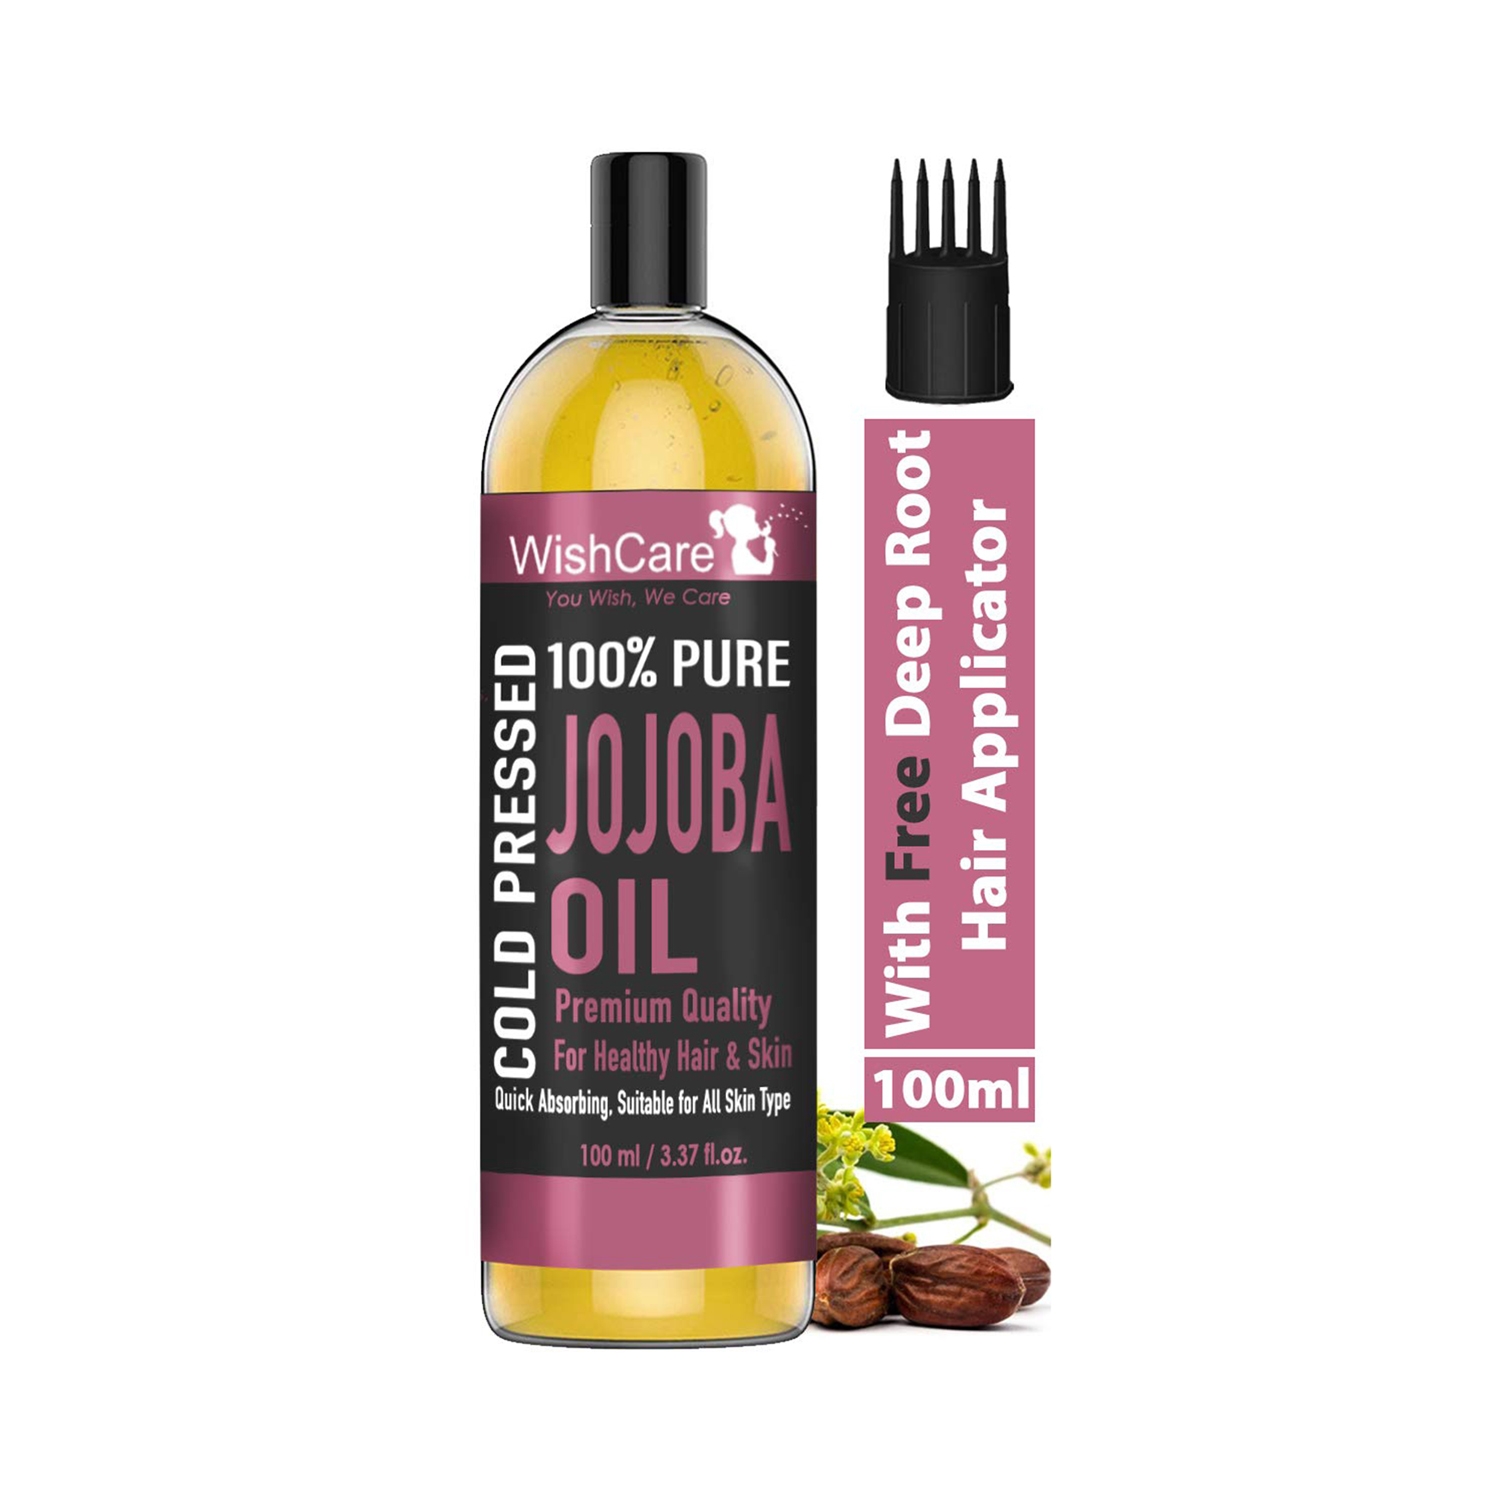 WishCare | Wishcare 100% Pure Cold Pressed Jojoba Oil (100ml)